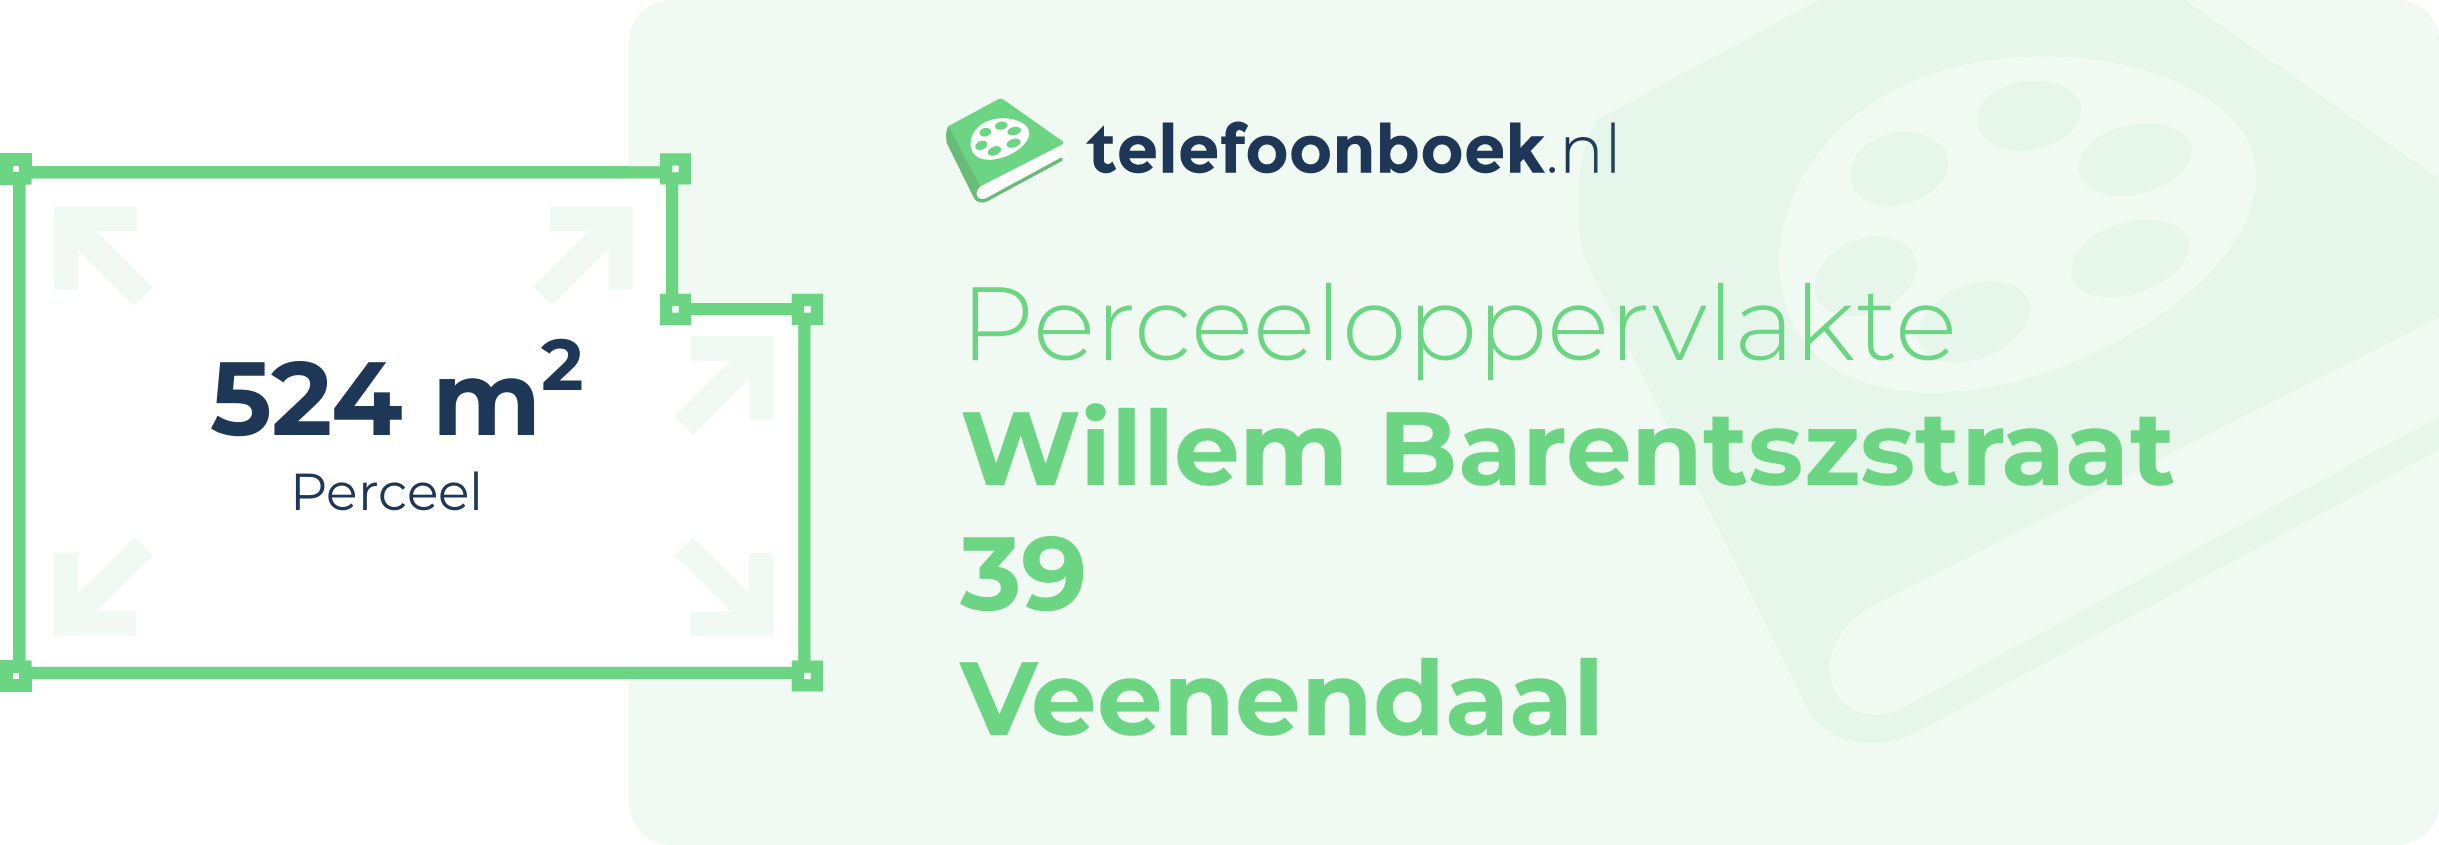 Perceeloppervlakte Willem Barentszstraat 39 Veenendaal